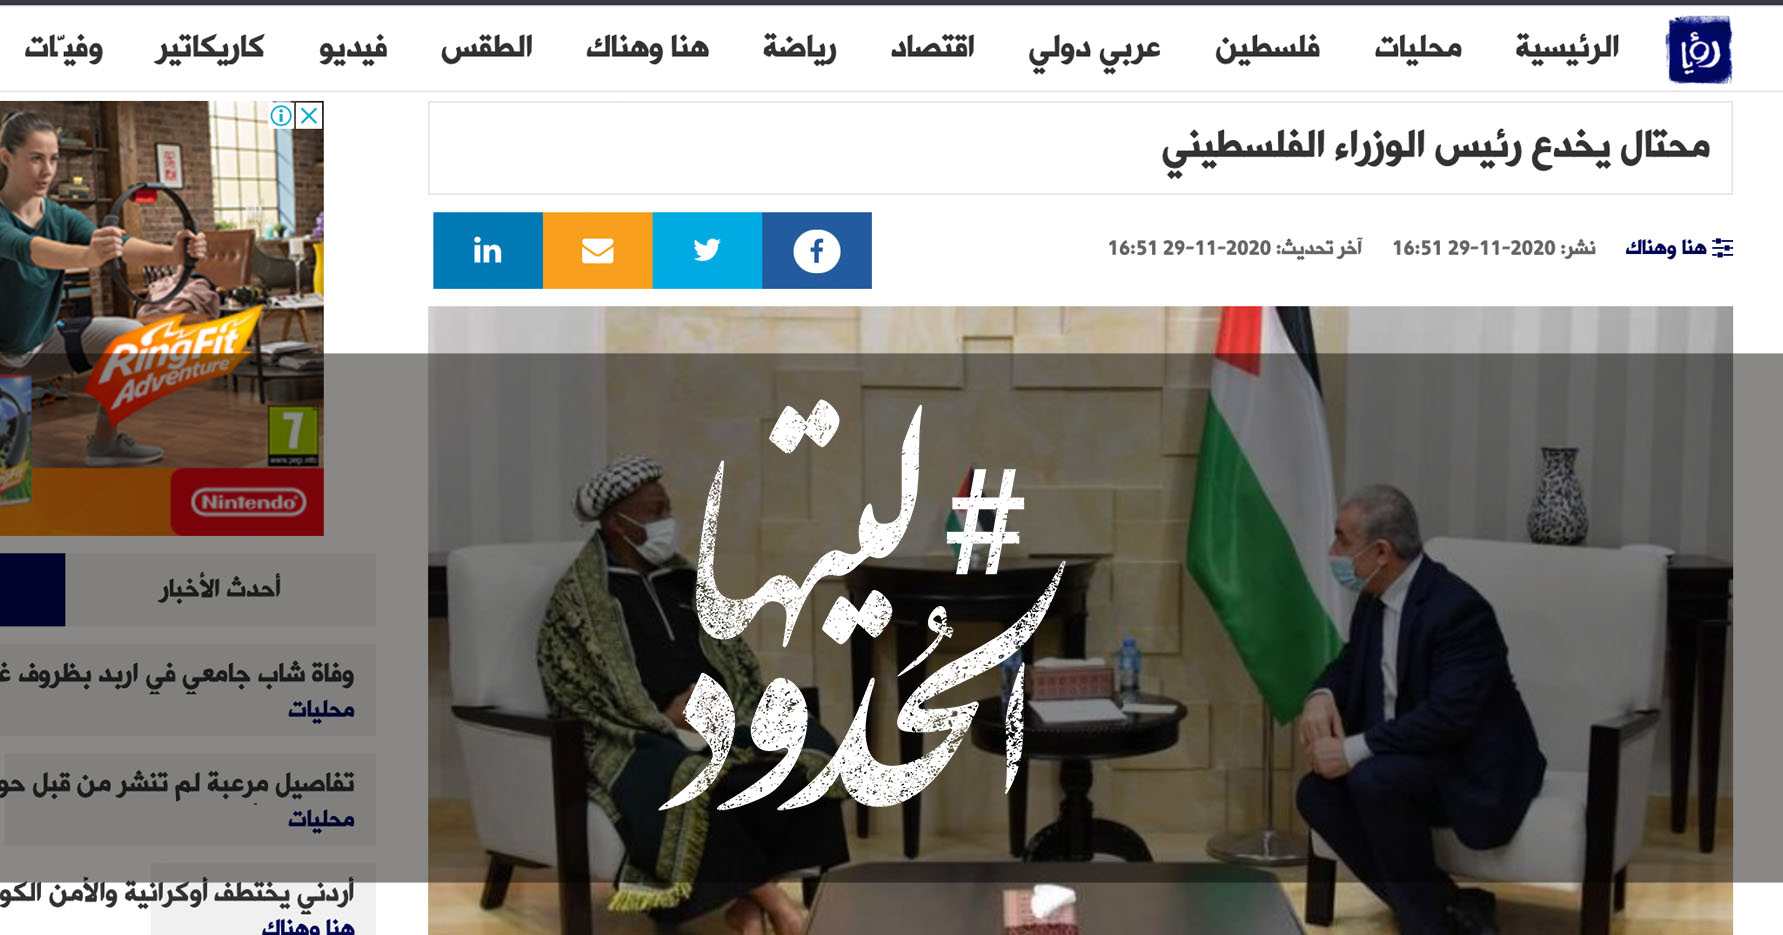 صورة محتال يخدع رئيس الوزراء الفلسطيني